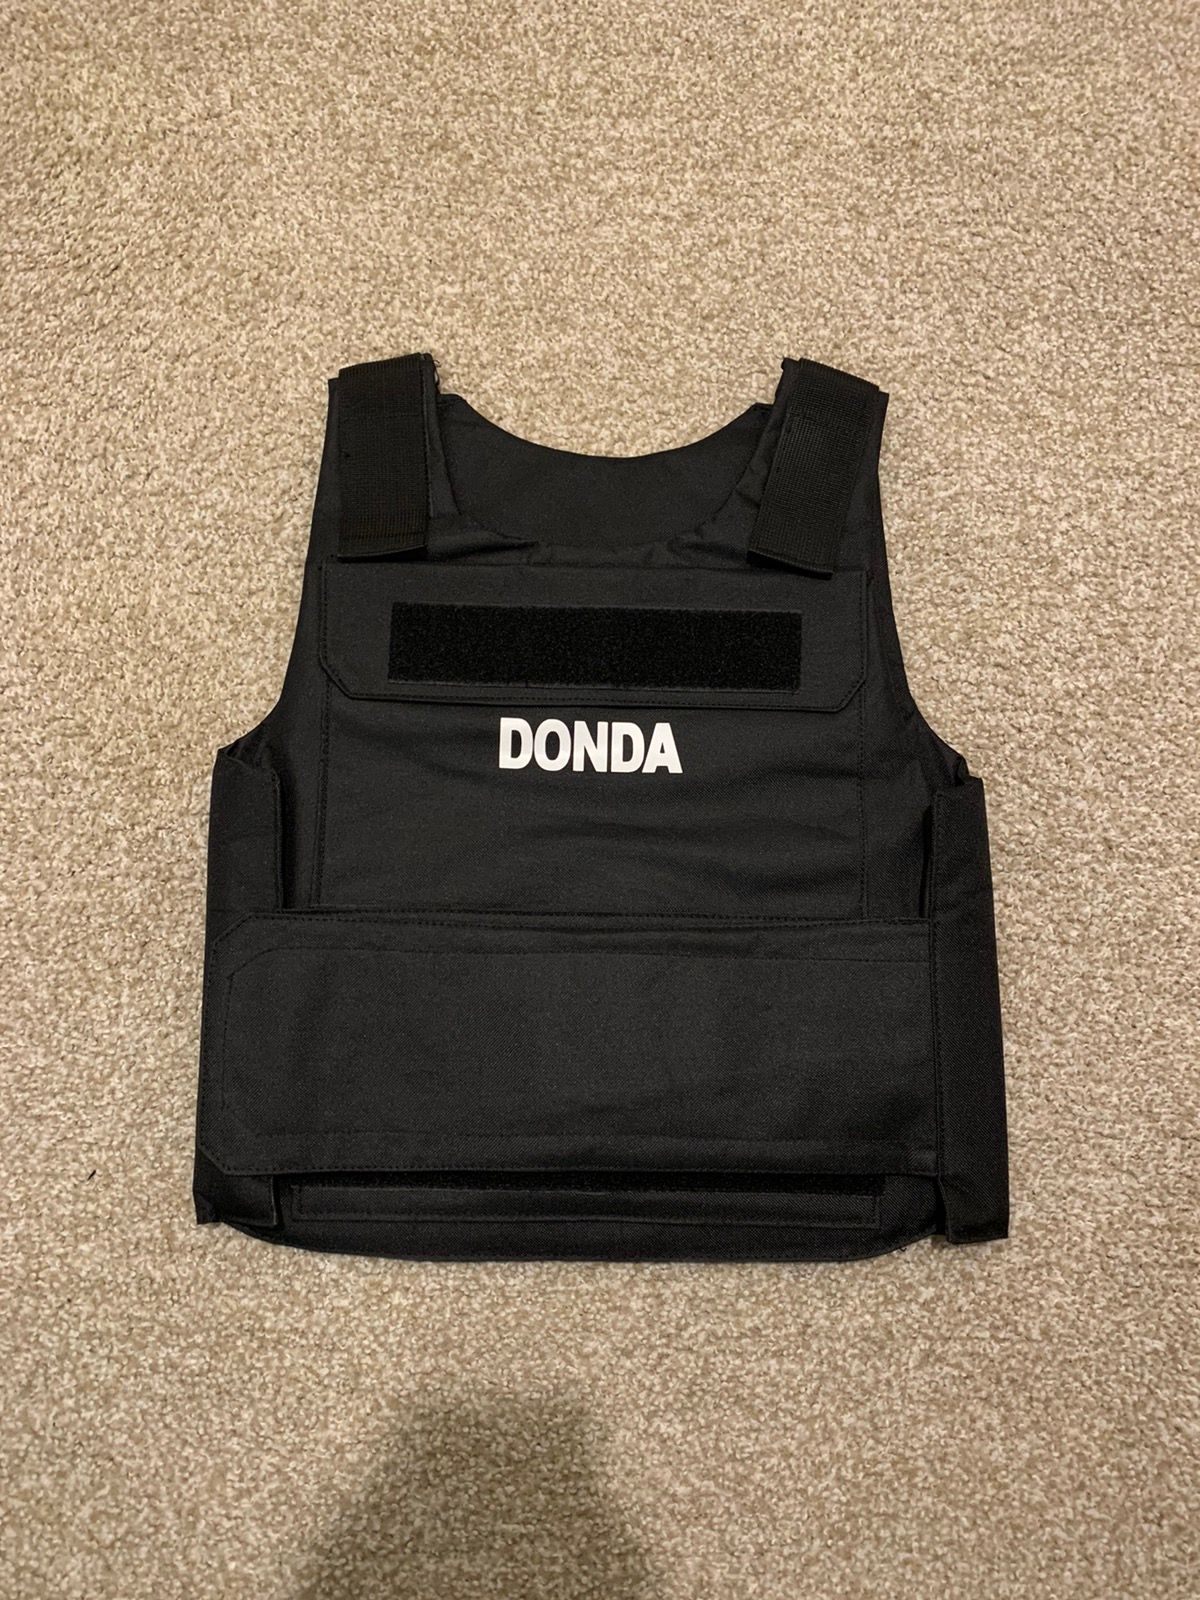 Pre-owned Kanye West Donda Listening Event Bulletproof Vest In Black